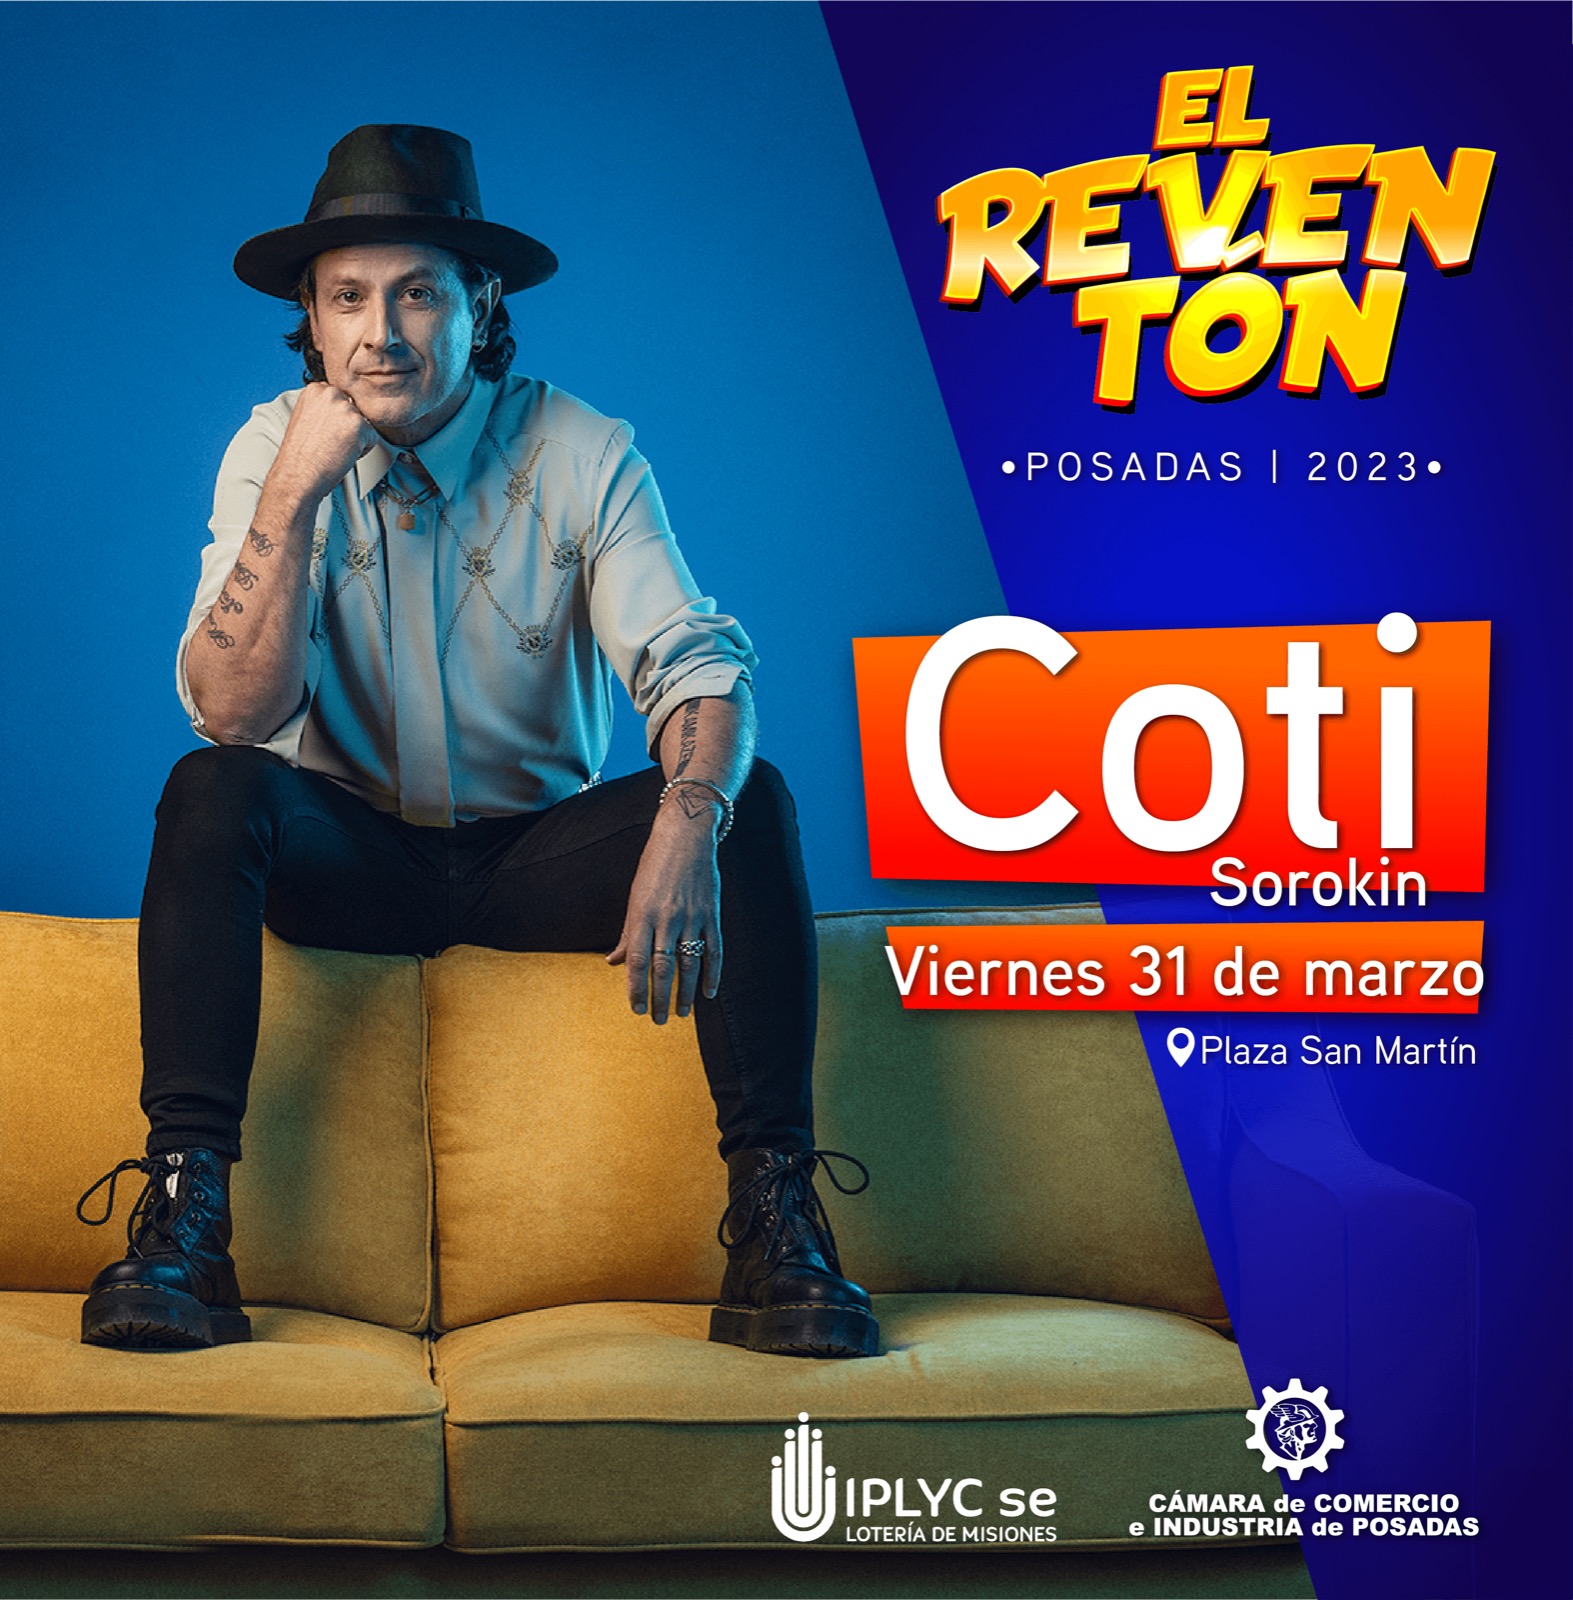 Este viernes Coti Sorokin dará un show en la plaza San Martín de Posadas